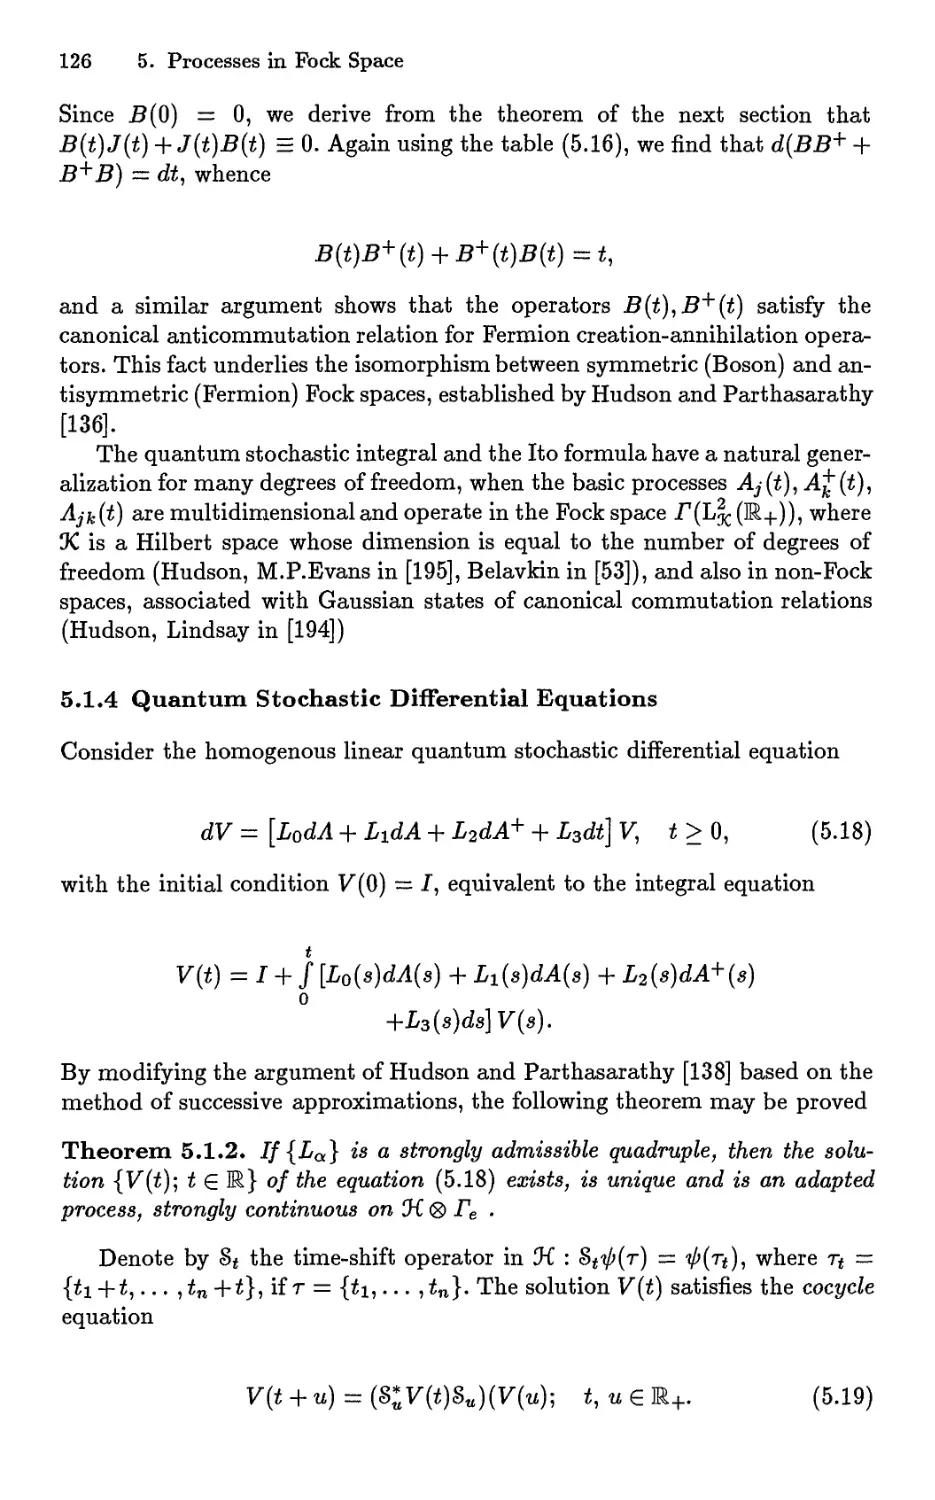 5.1.4 Quantum Stochastic Differential Equations